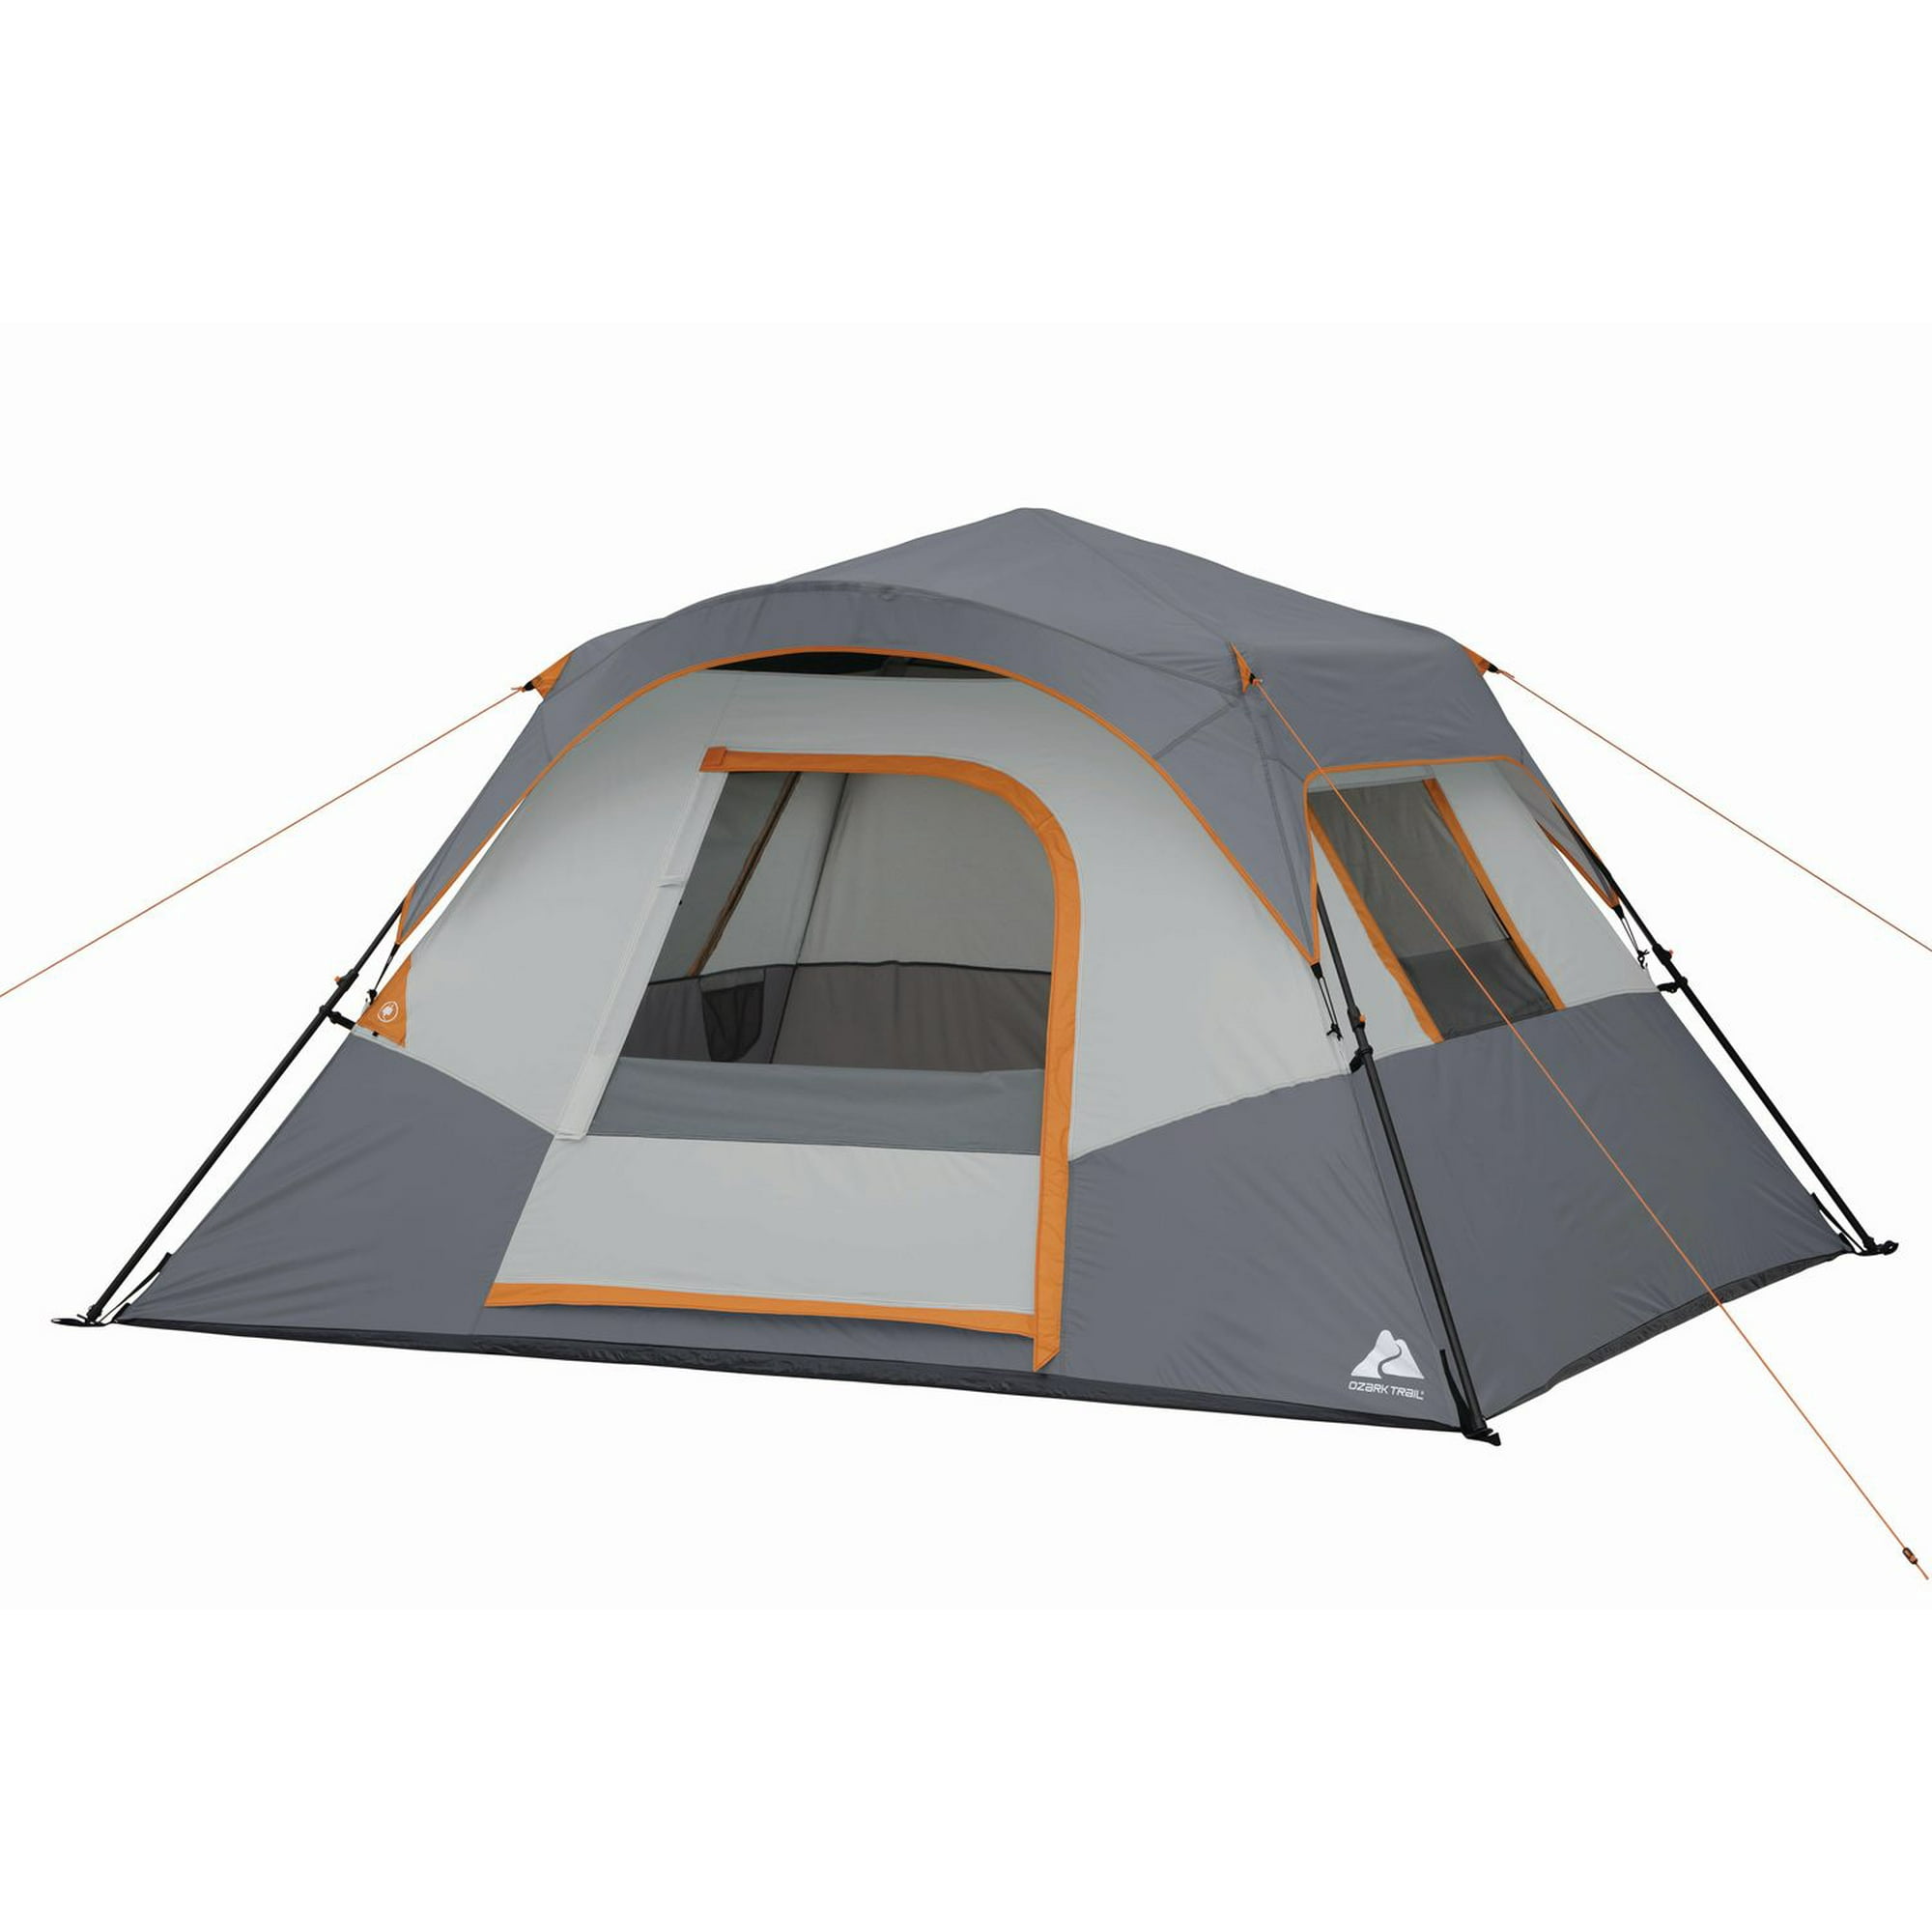 Ozark Trail 6-Person Dome Tent, 6-Person dome tent. 